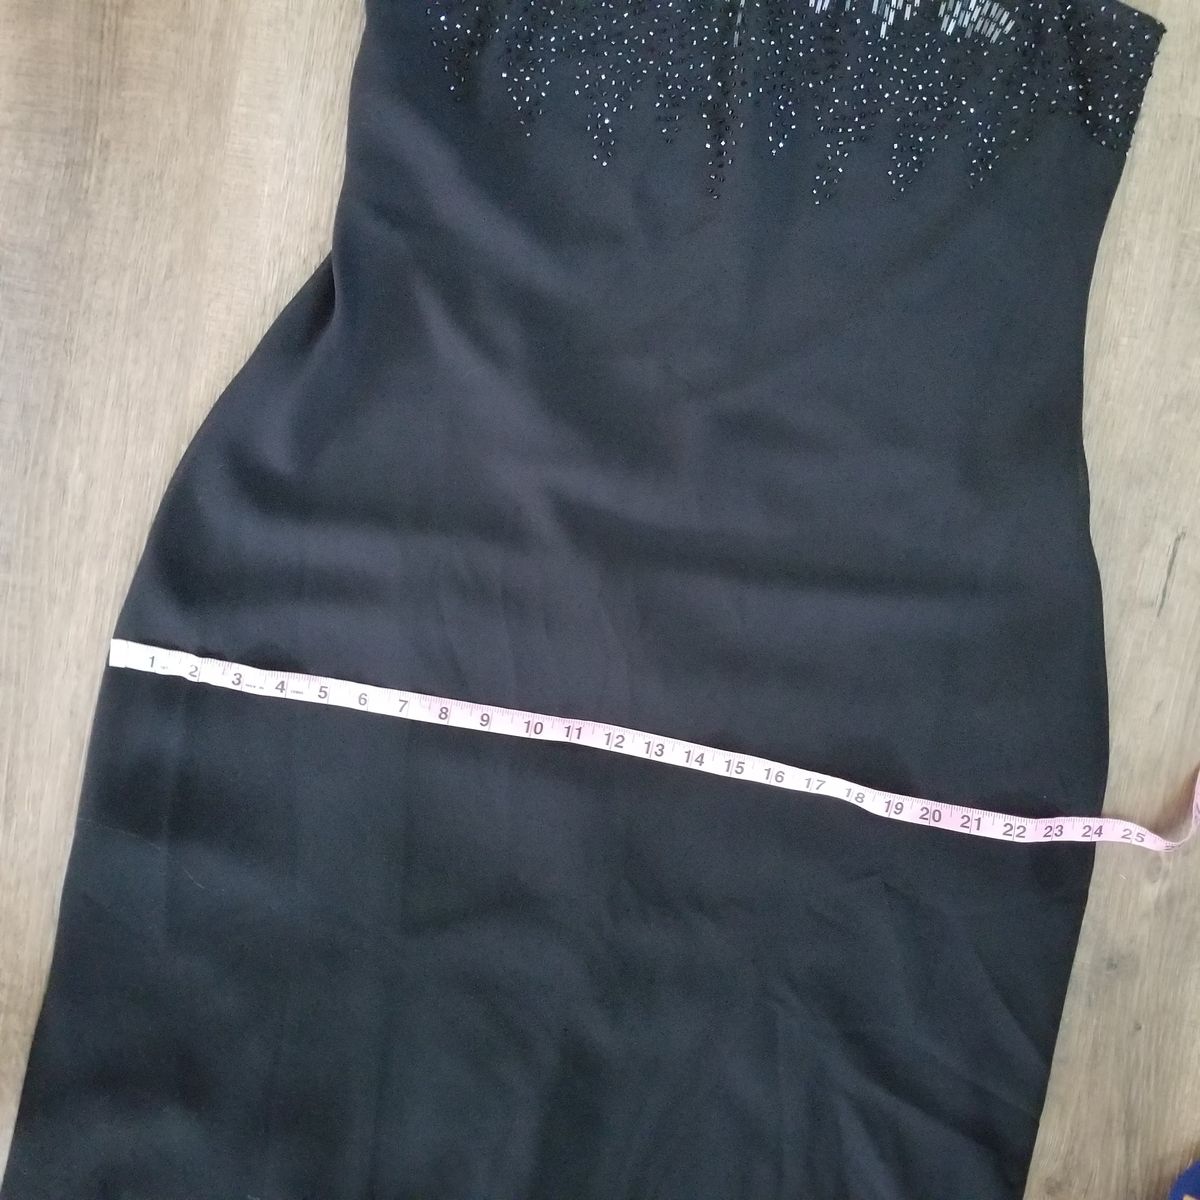 Vintage Plus Size 16 Black Mermaid Dress on Queenly